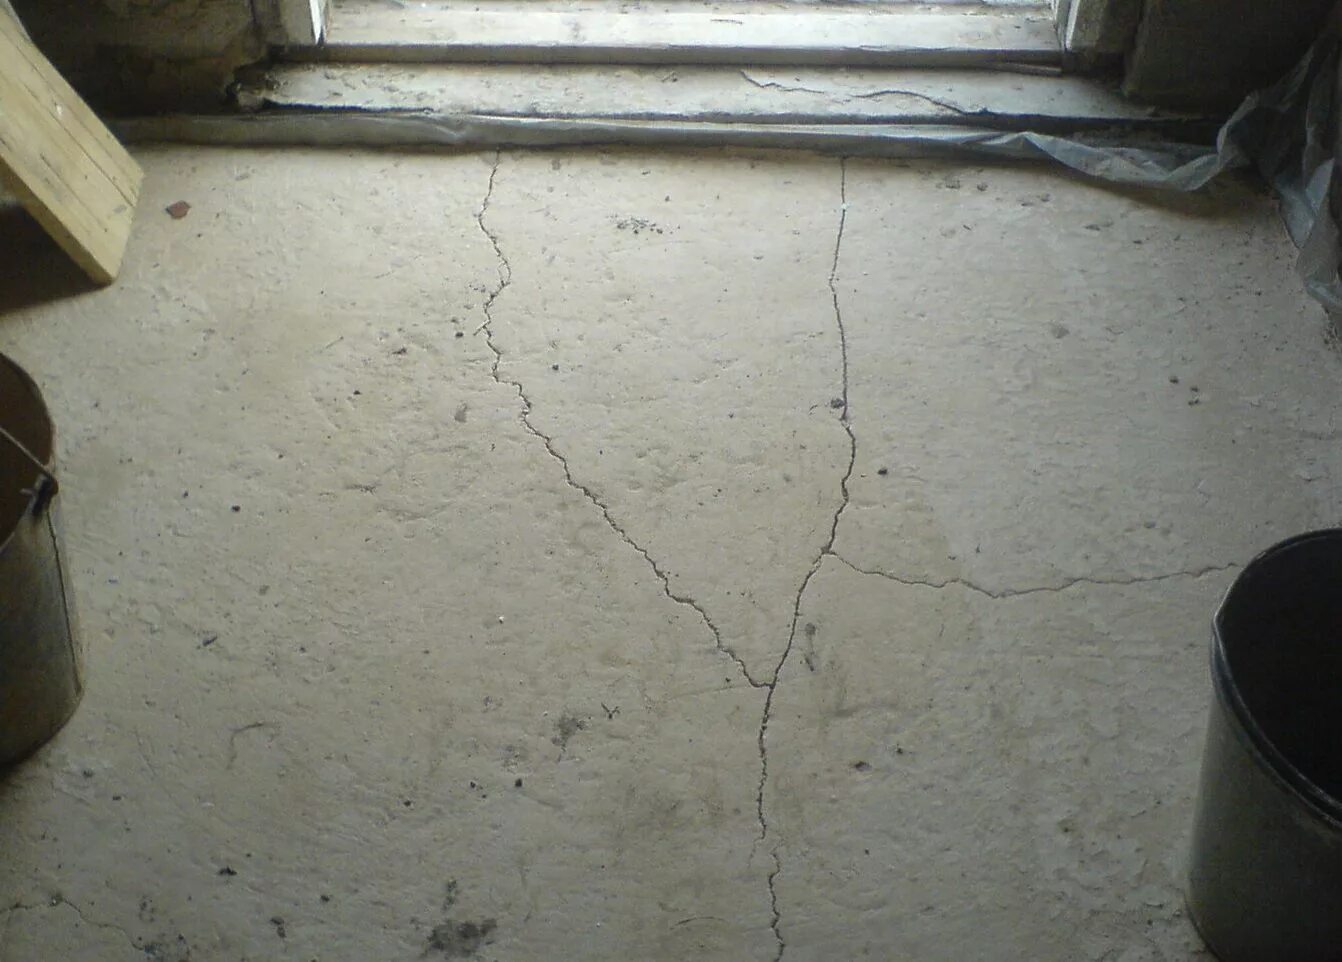 Цементно-Песчаная стяжка пола трещины. Цементная стяжка бухтит. Усадочные трещины на стяжке. Потрескалась стяжка пола. Трещины стен стяжки